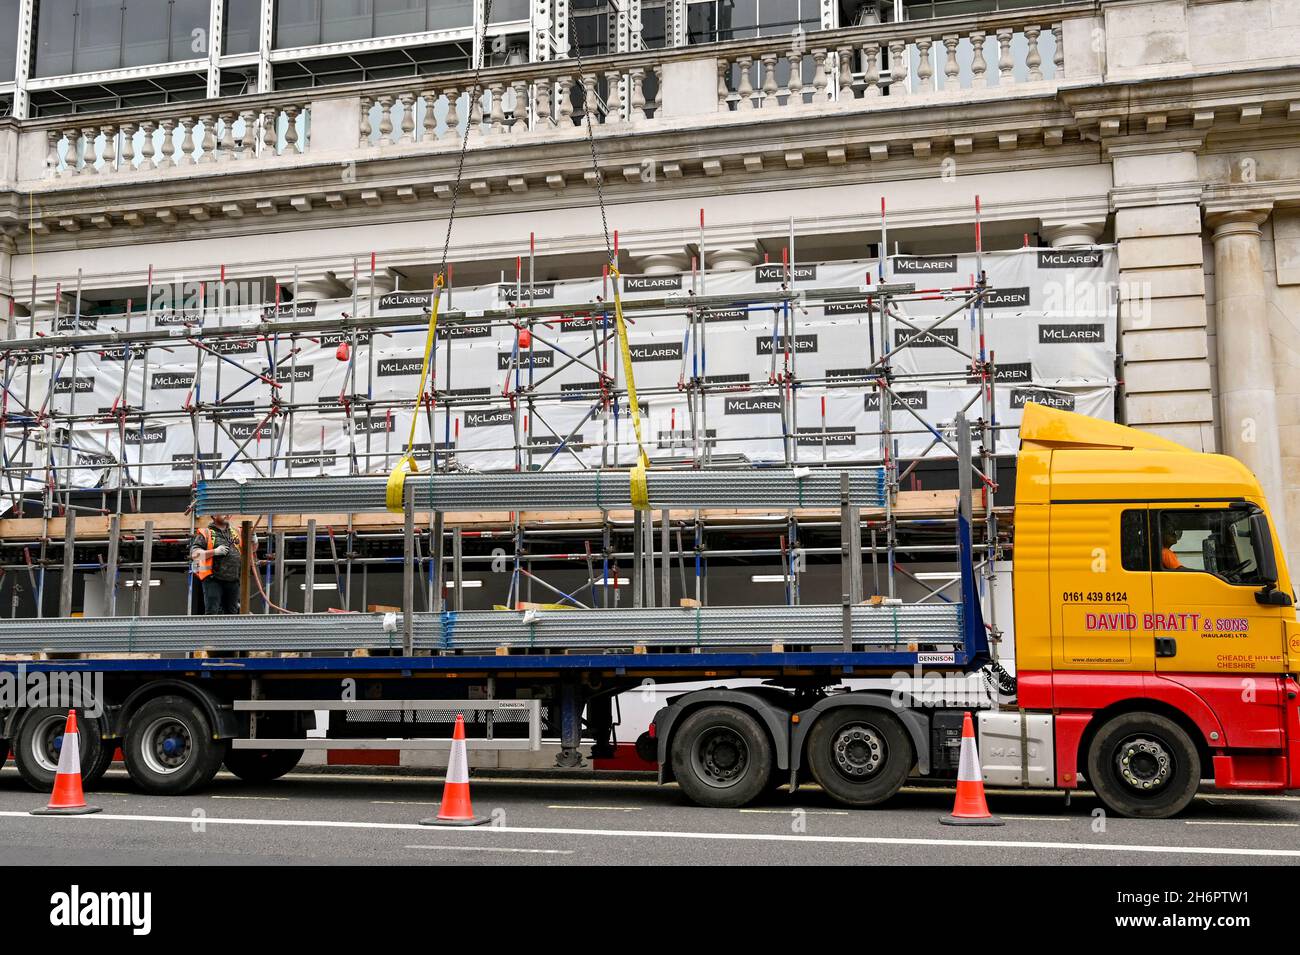 Londra, Inghilterra - Agosto 2021: Carico di materiali da costruzione in acciaio che viene sollevato mediante gru dal retro di un autocarro articolato. Foto Stock